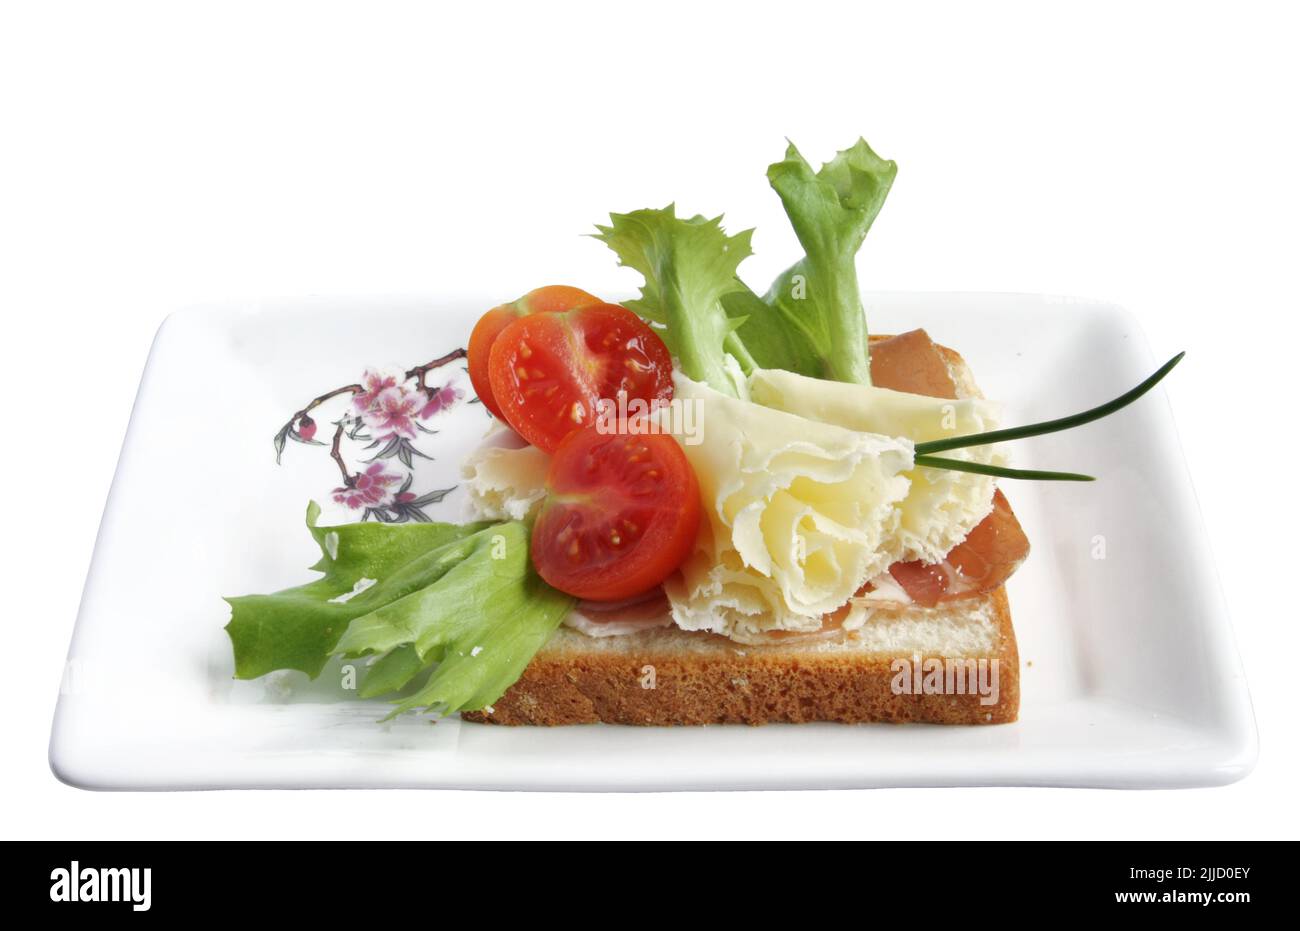 Spécialité fromage suisse - Rosettes de Tete de Moine avec tomate sur un toast au blé entier Banque D'Images